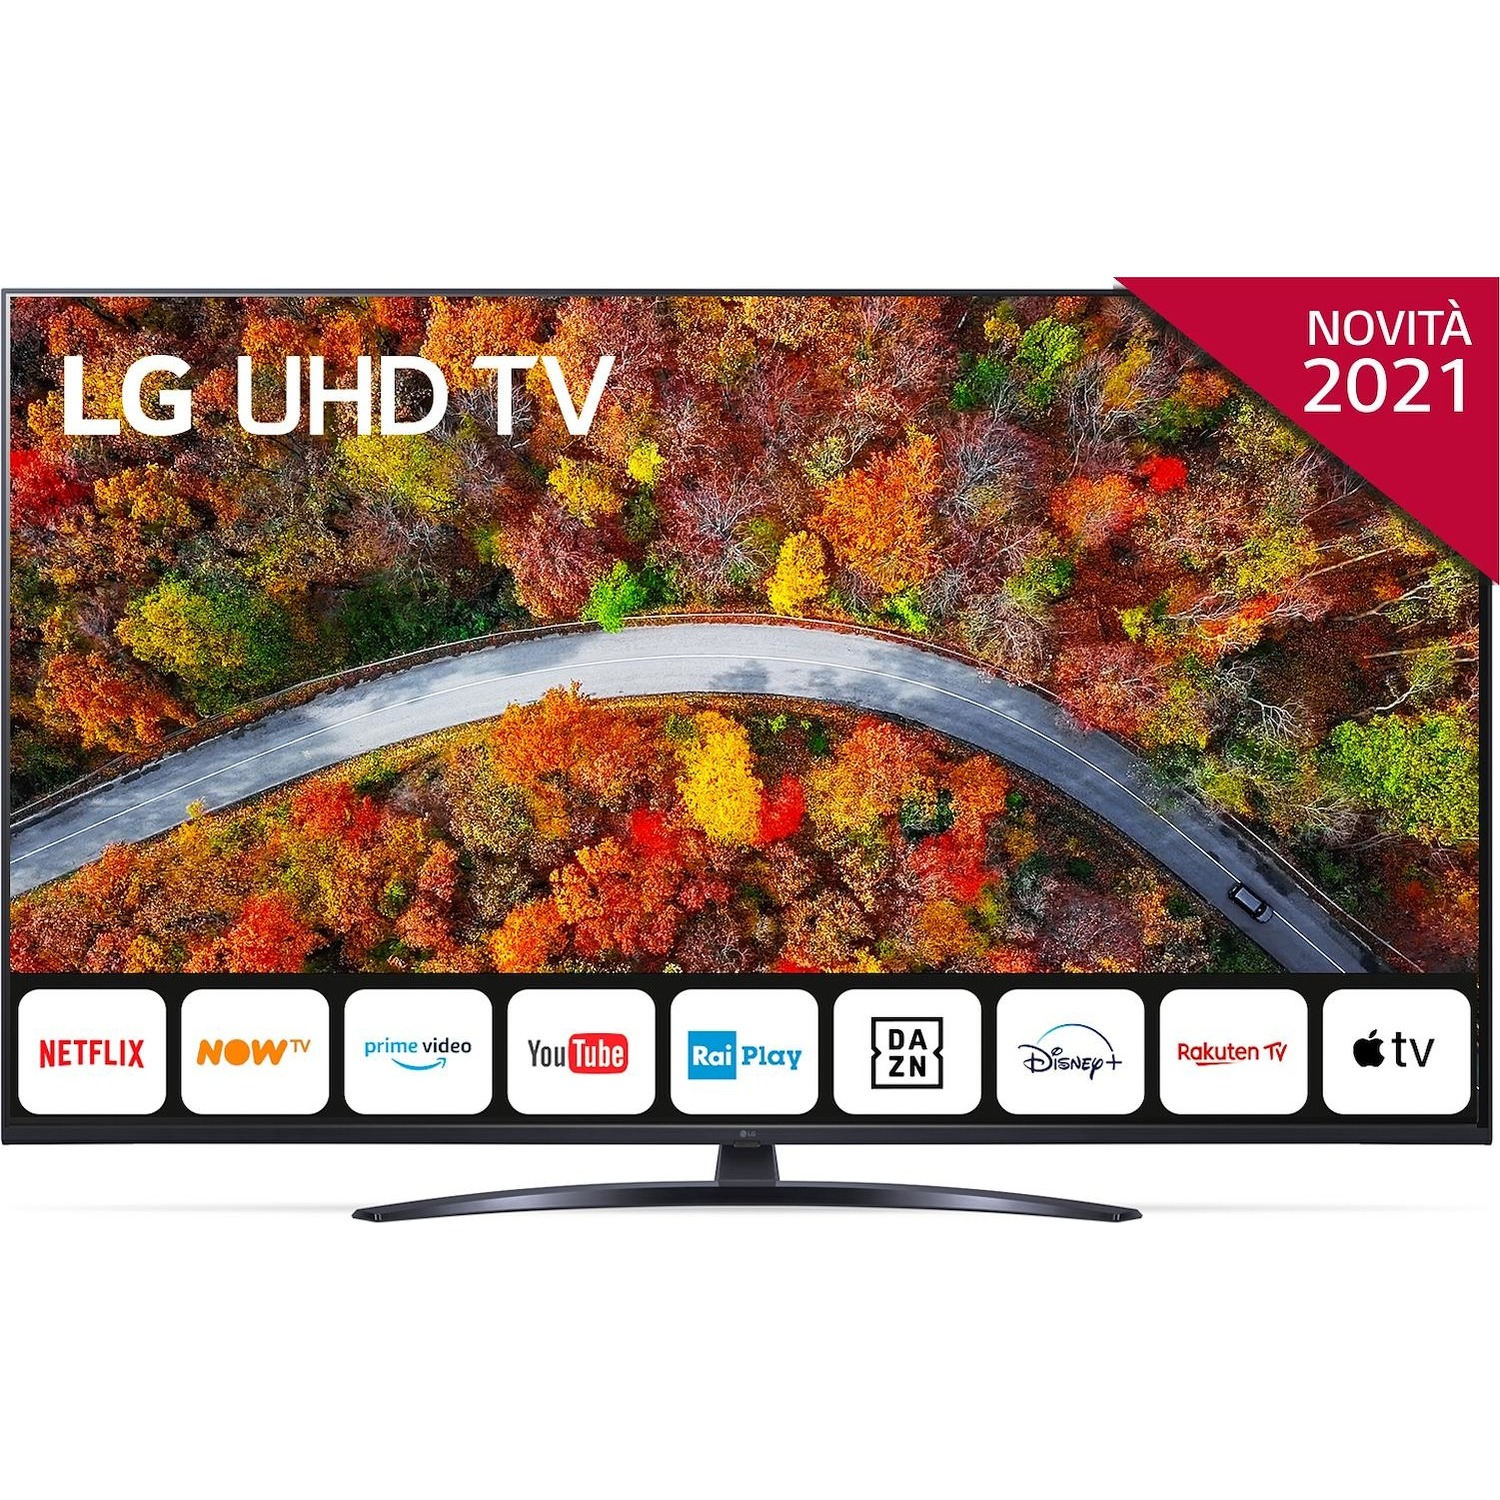 Immagine per TV LED LG 55UP81006 Calibrato 4K e FULL HD da DIMOStore